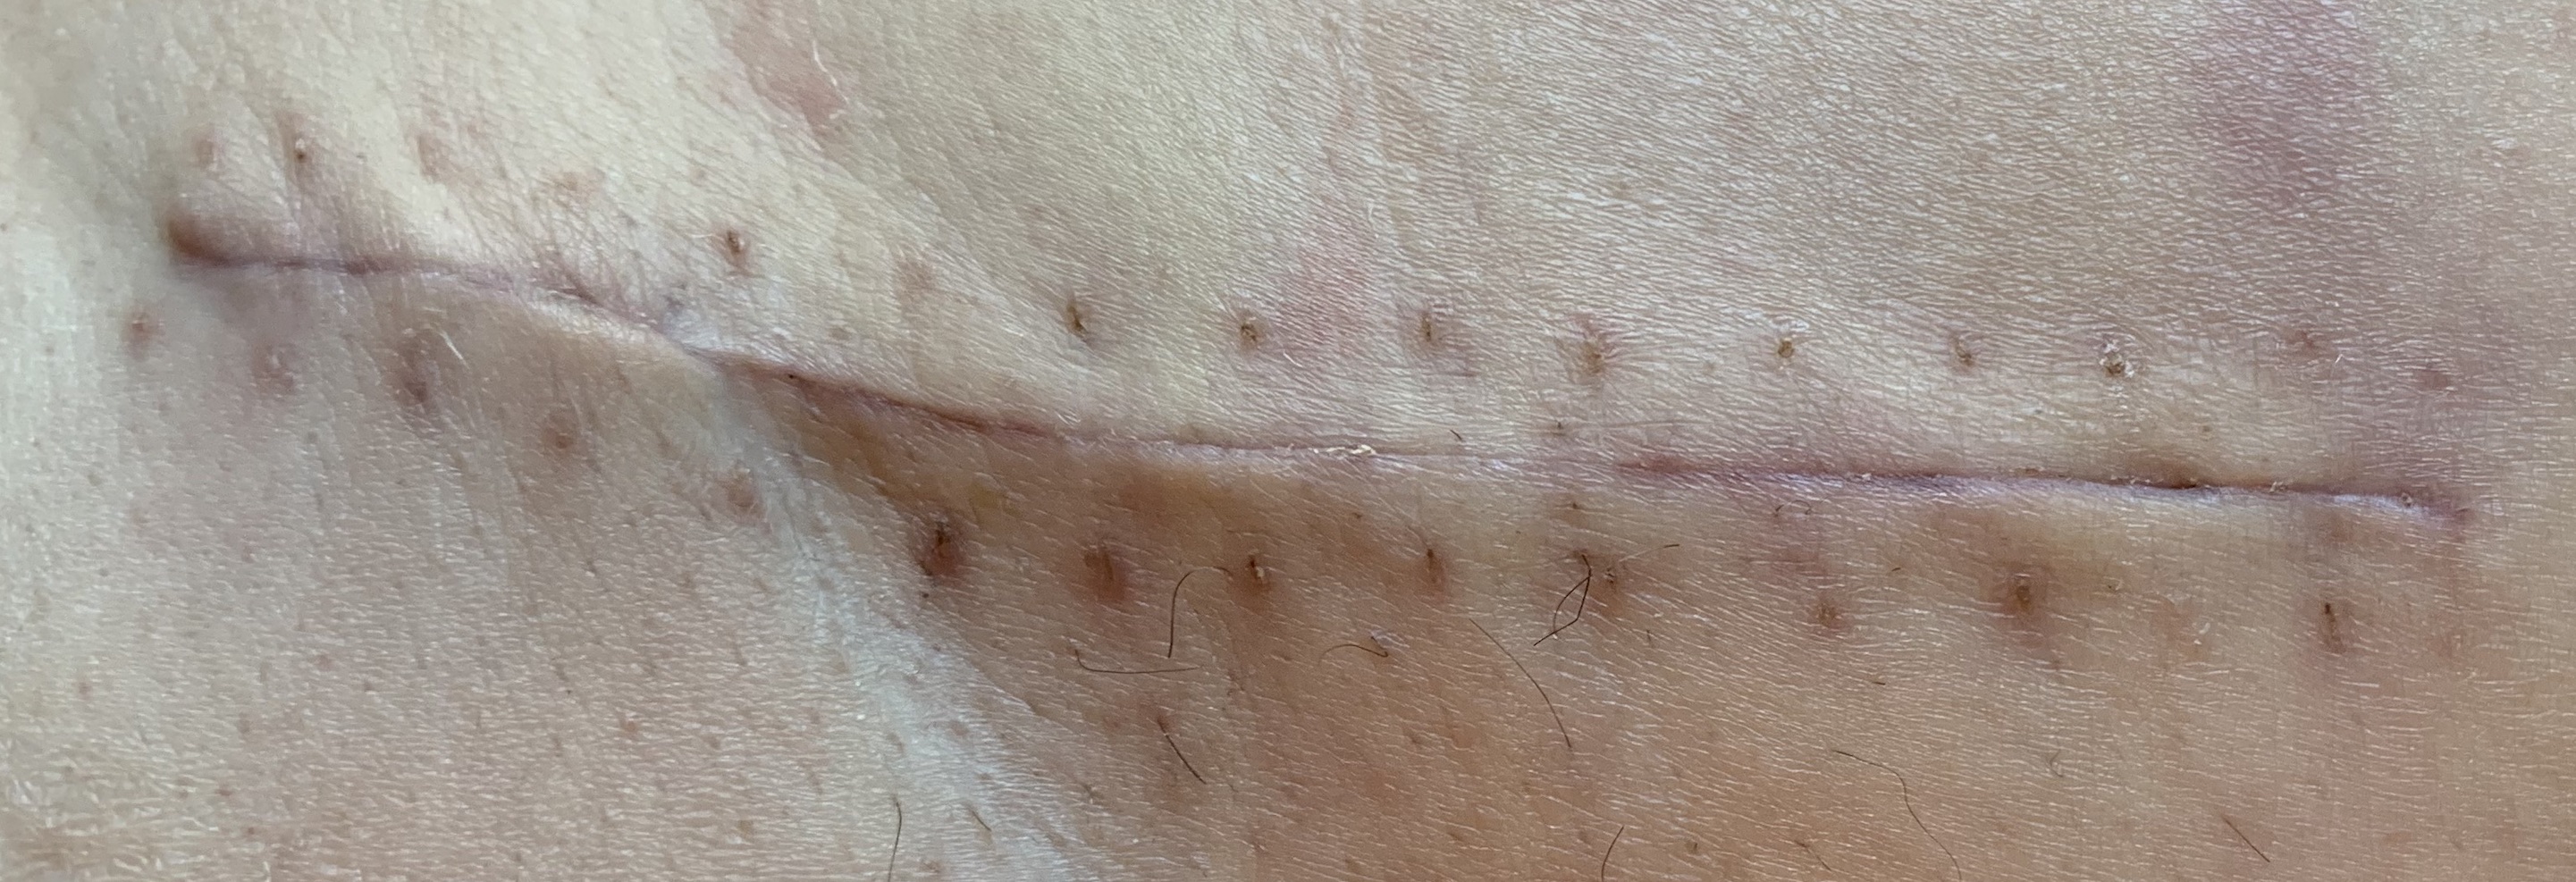 close up of a scar in caucasian skin